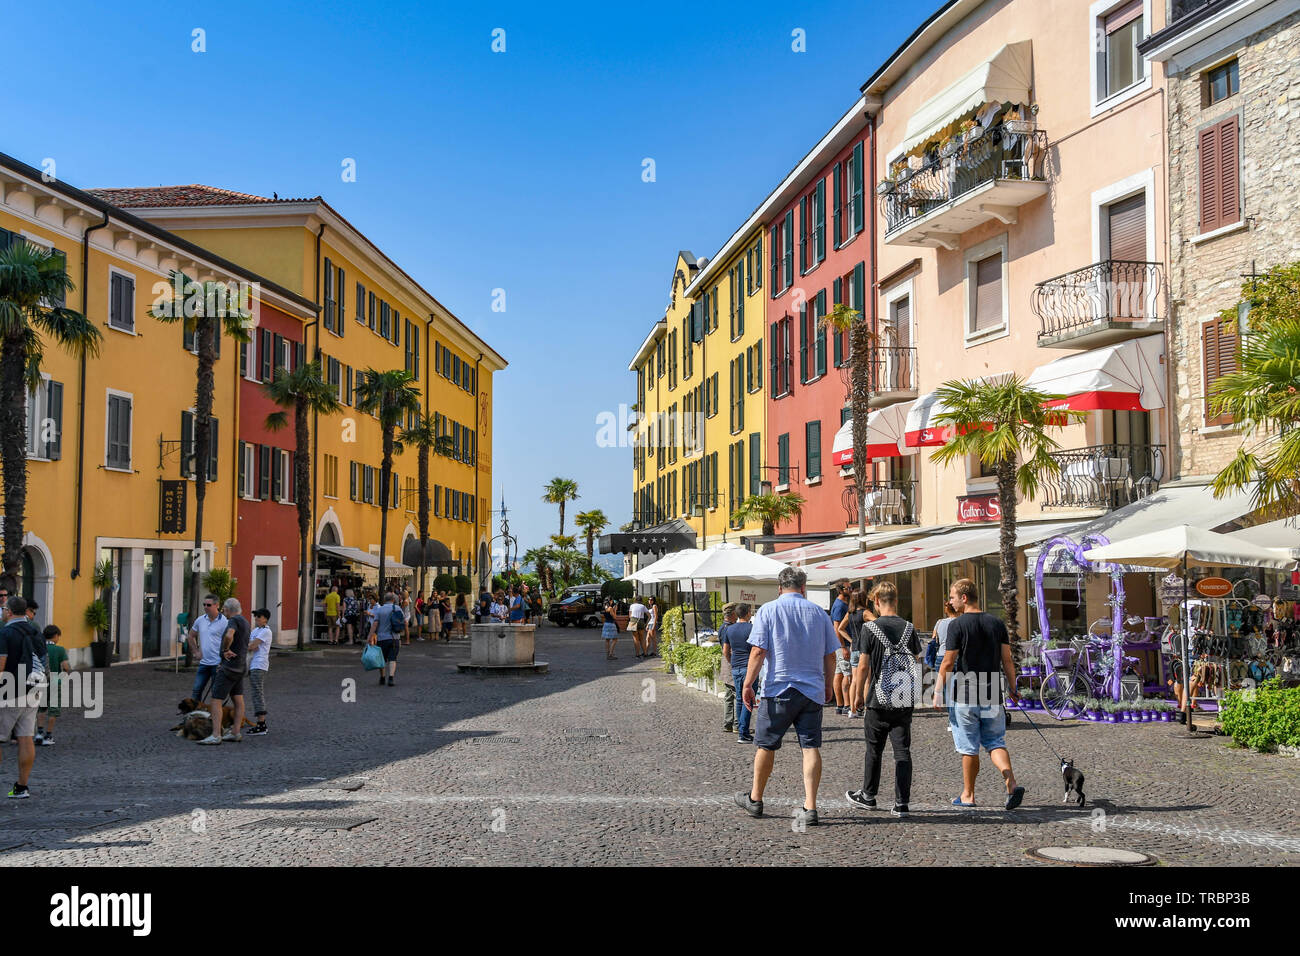 SIRMIONE SUL LAGO DI GARDA, Italia - Settembre 2018: la gente camminare lungo una strada a Sirmione sul Lago di Garda. Foto Stock